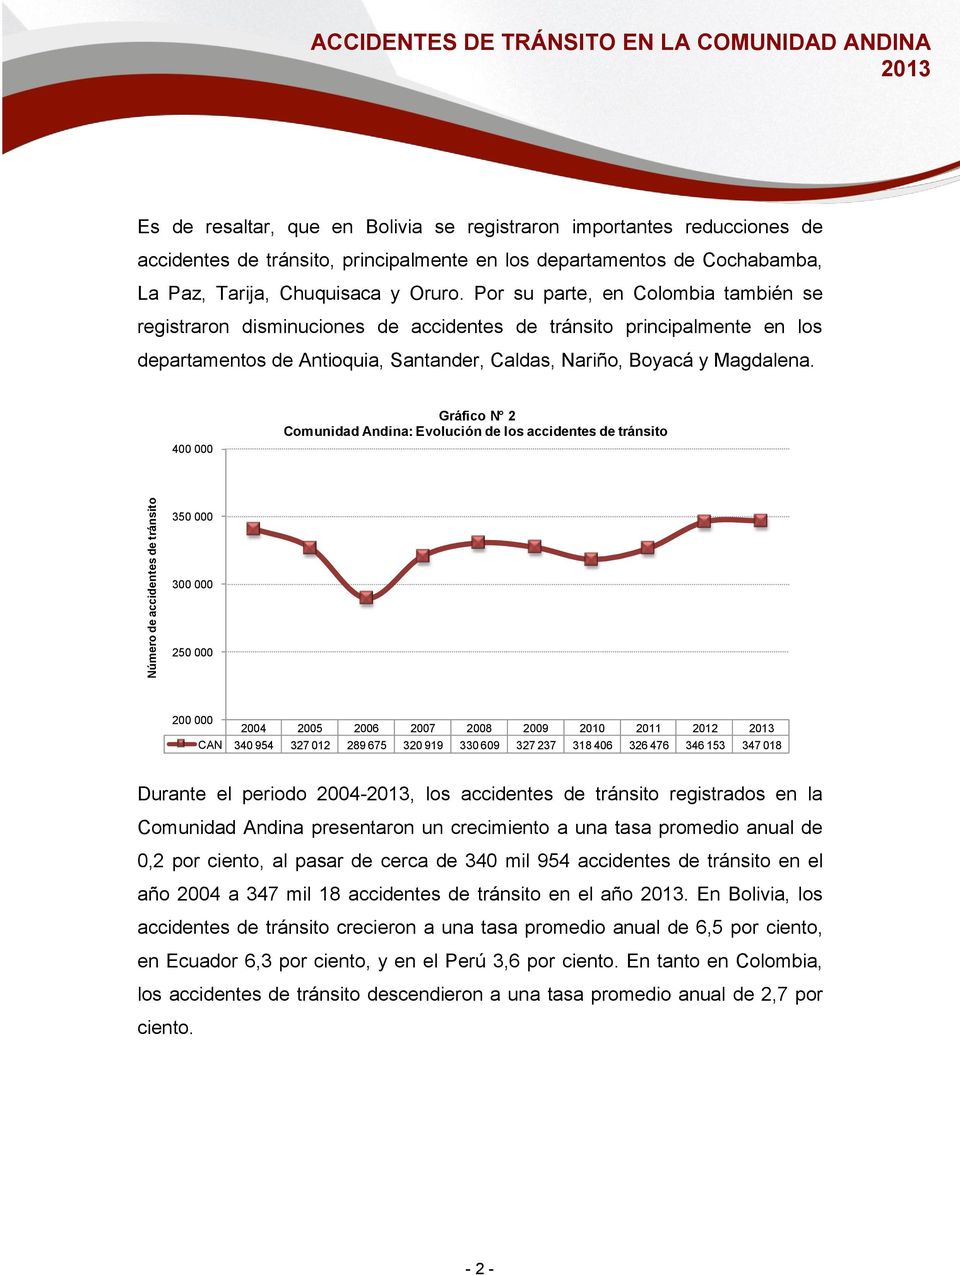 Por su parte, en Colombia también se registraron disminuciones de accidentes de tránsito principalmente en los departamentos de Antioquia, Santander, Caldas, Nariño, Boyacá y Magdalena.